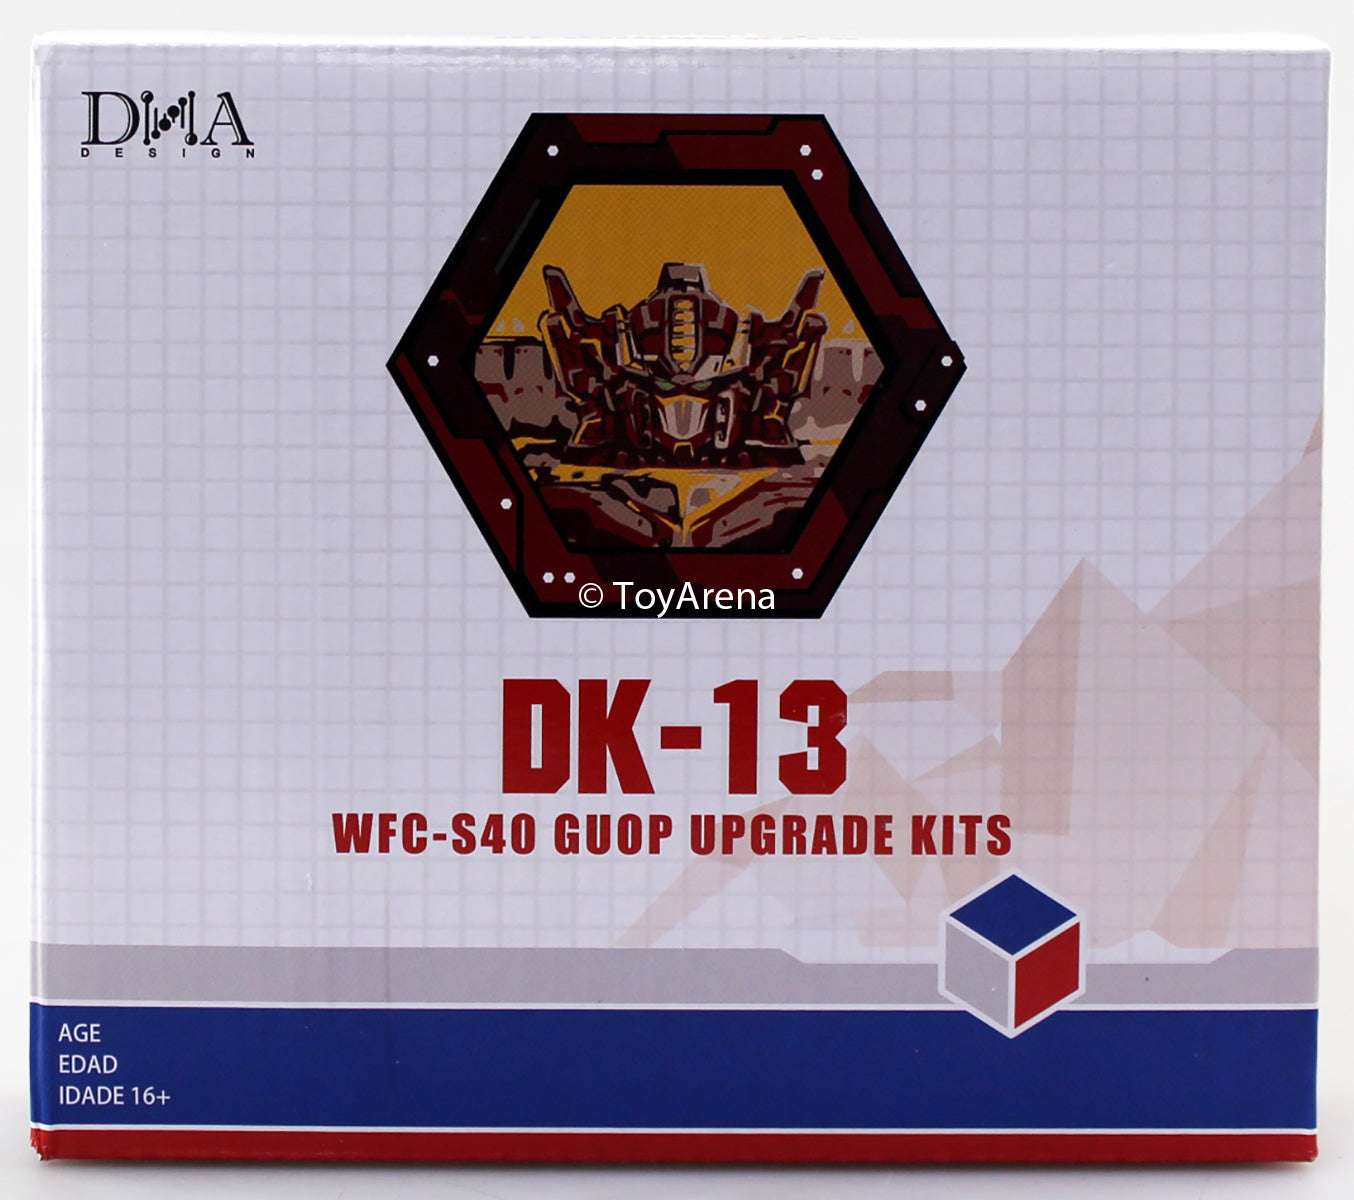 DNA Design DK-13 Upgrade kit for WFC-S40